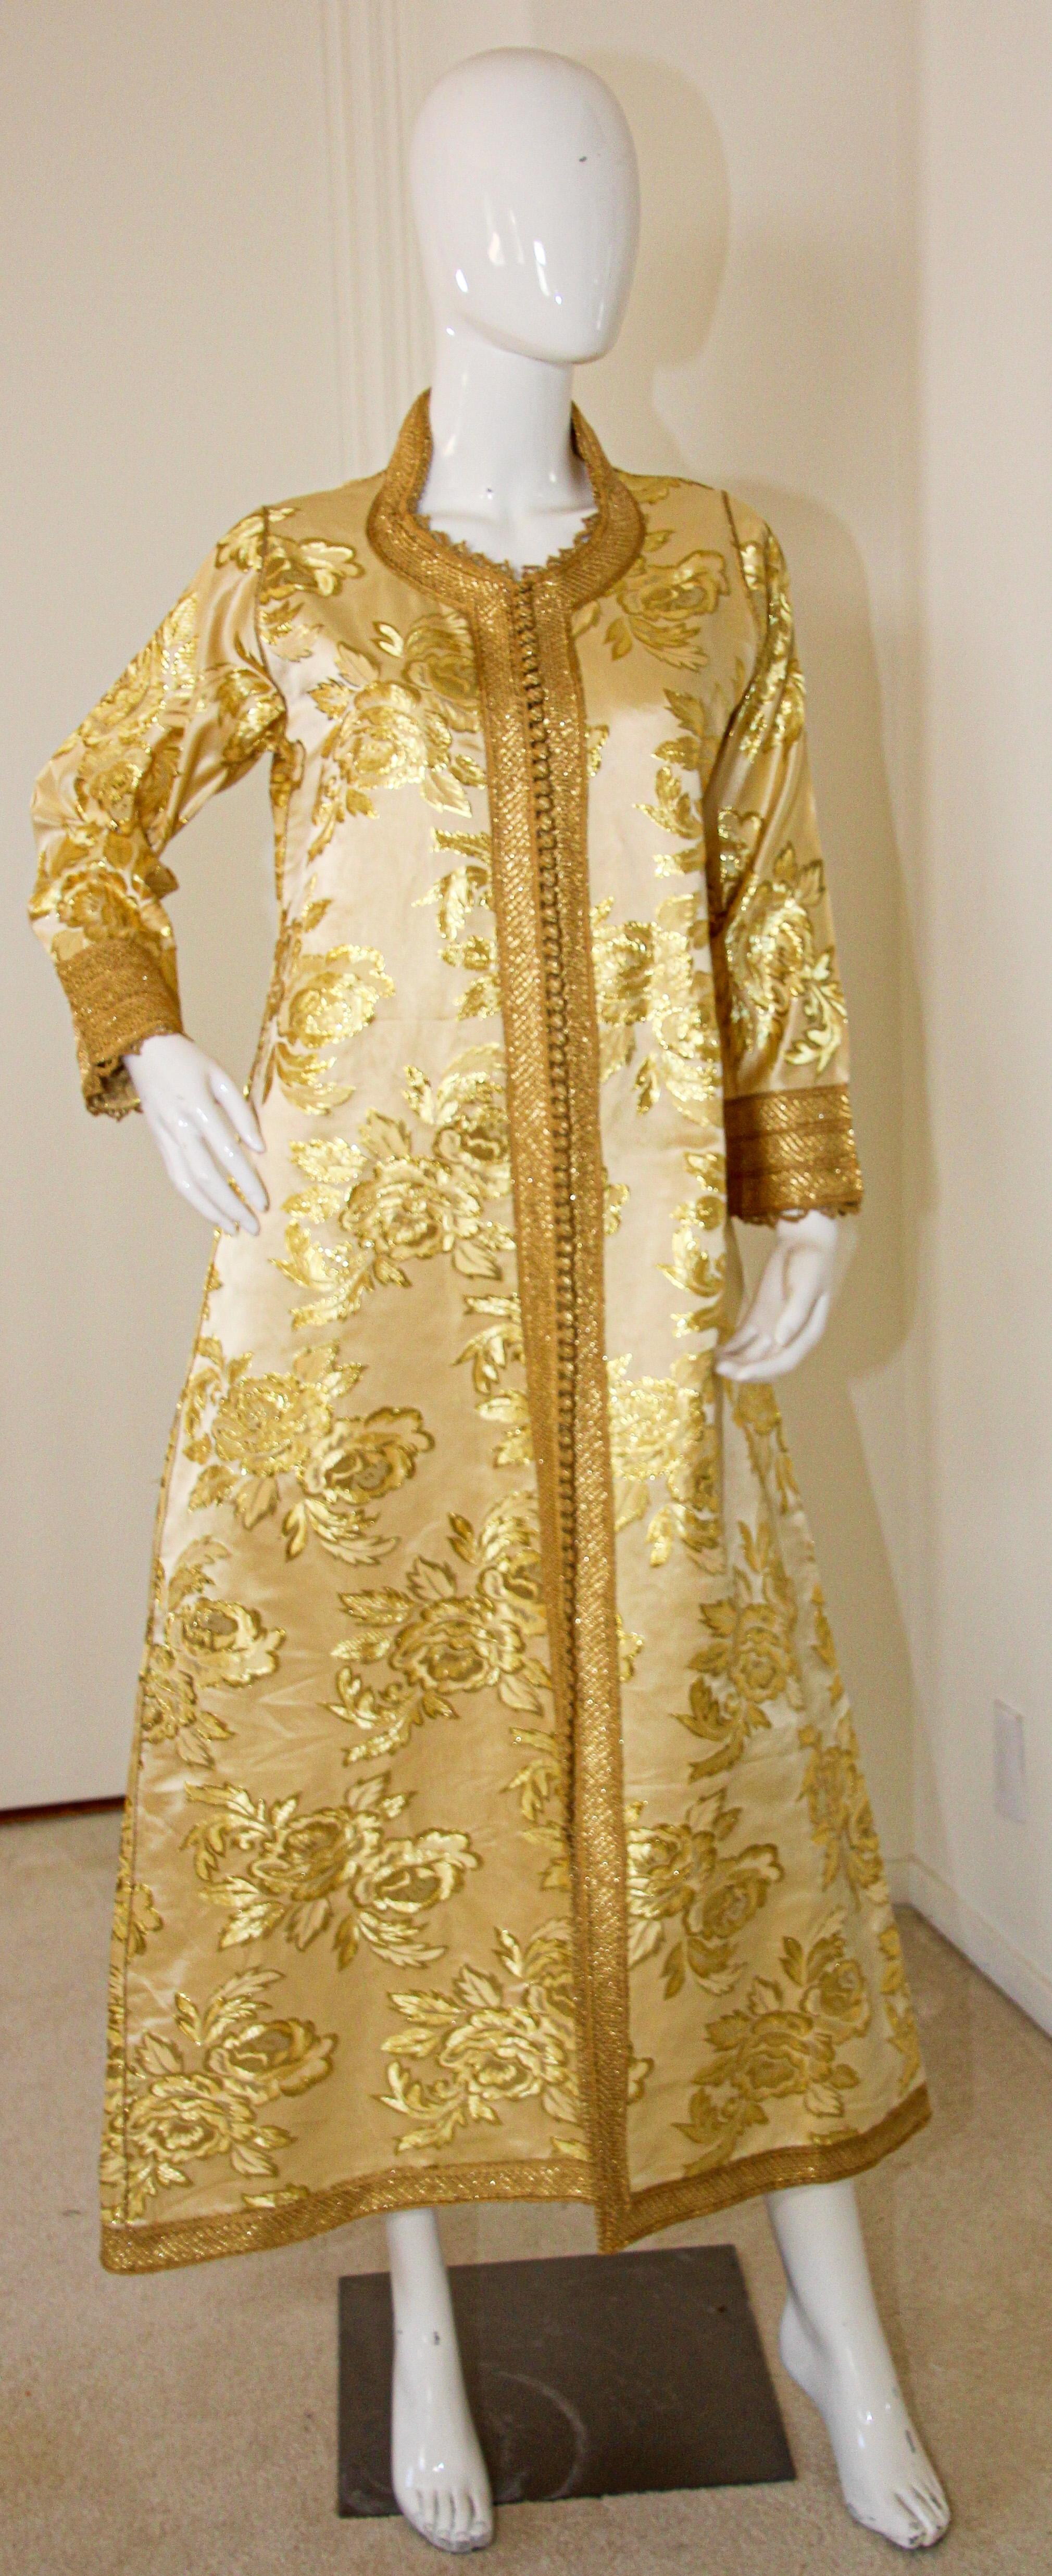 Amazing vintage Moroccan Caftan, gold silk damask gold threads trim, Circa 1960's
Le caftan en damas or clair a été entièrement fini à la main.
Robe de soirée mauresque ancienne unique en son genre.
Ce caftan authentique a été cousu à la main à